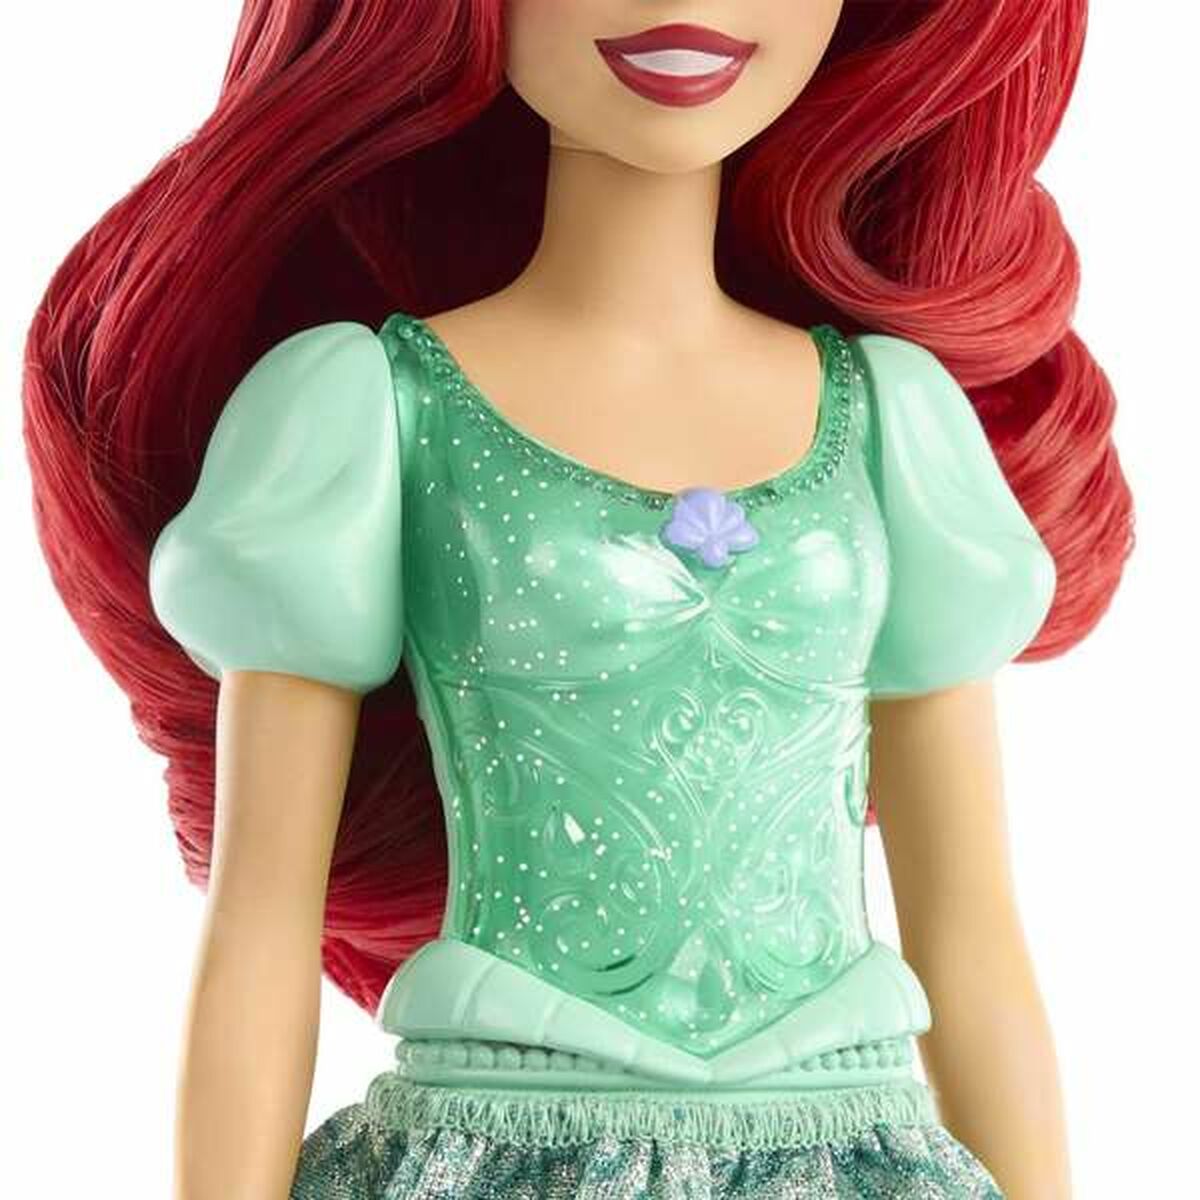 Bambola Disney Princess Ariel 29 cm - Disponibile in 3-4 giorni lavorativi